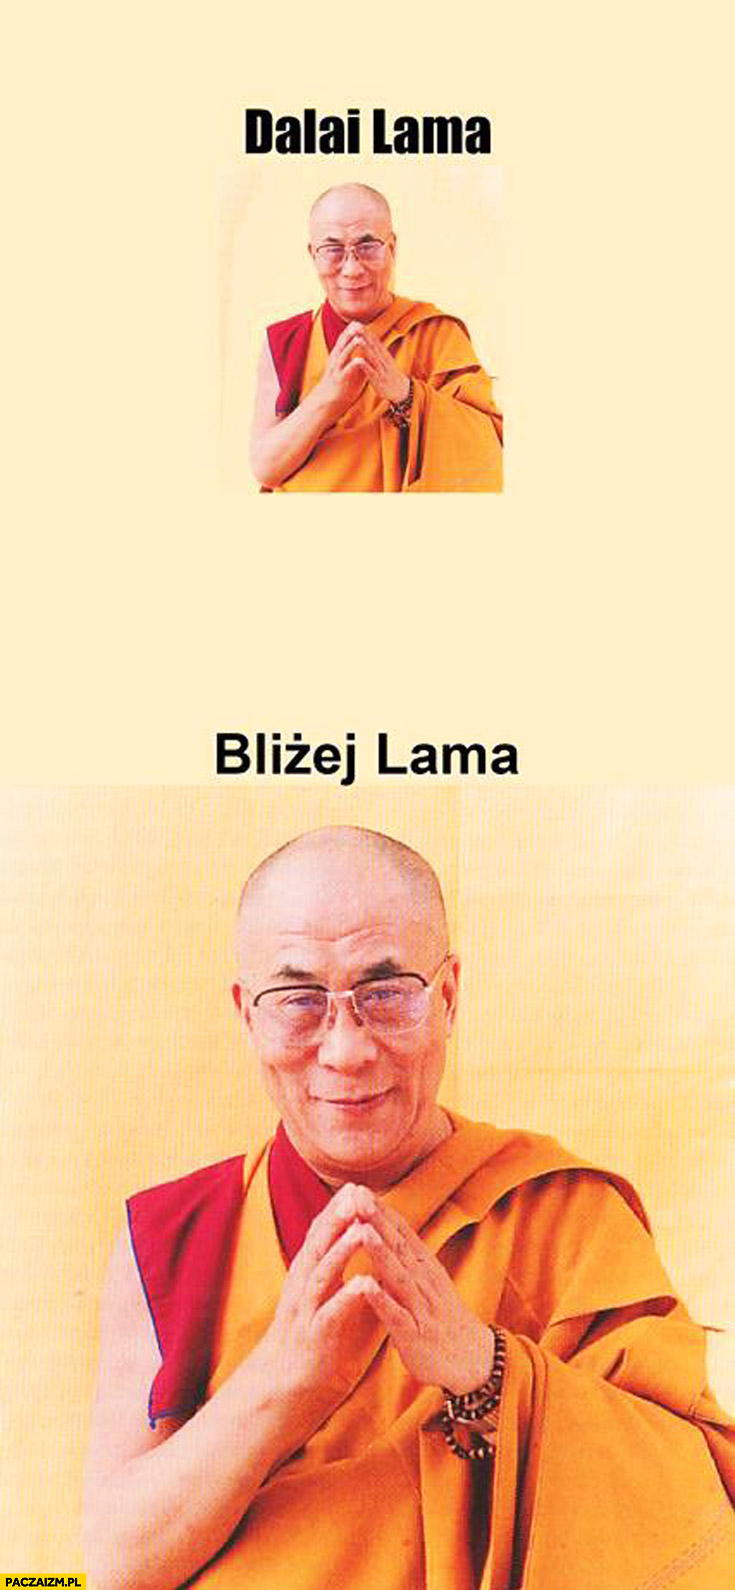 Trevor Manual Dalai Lama